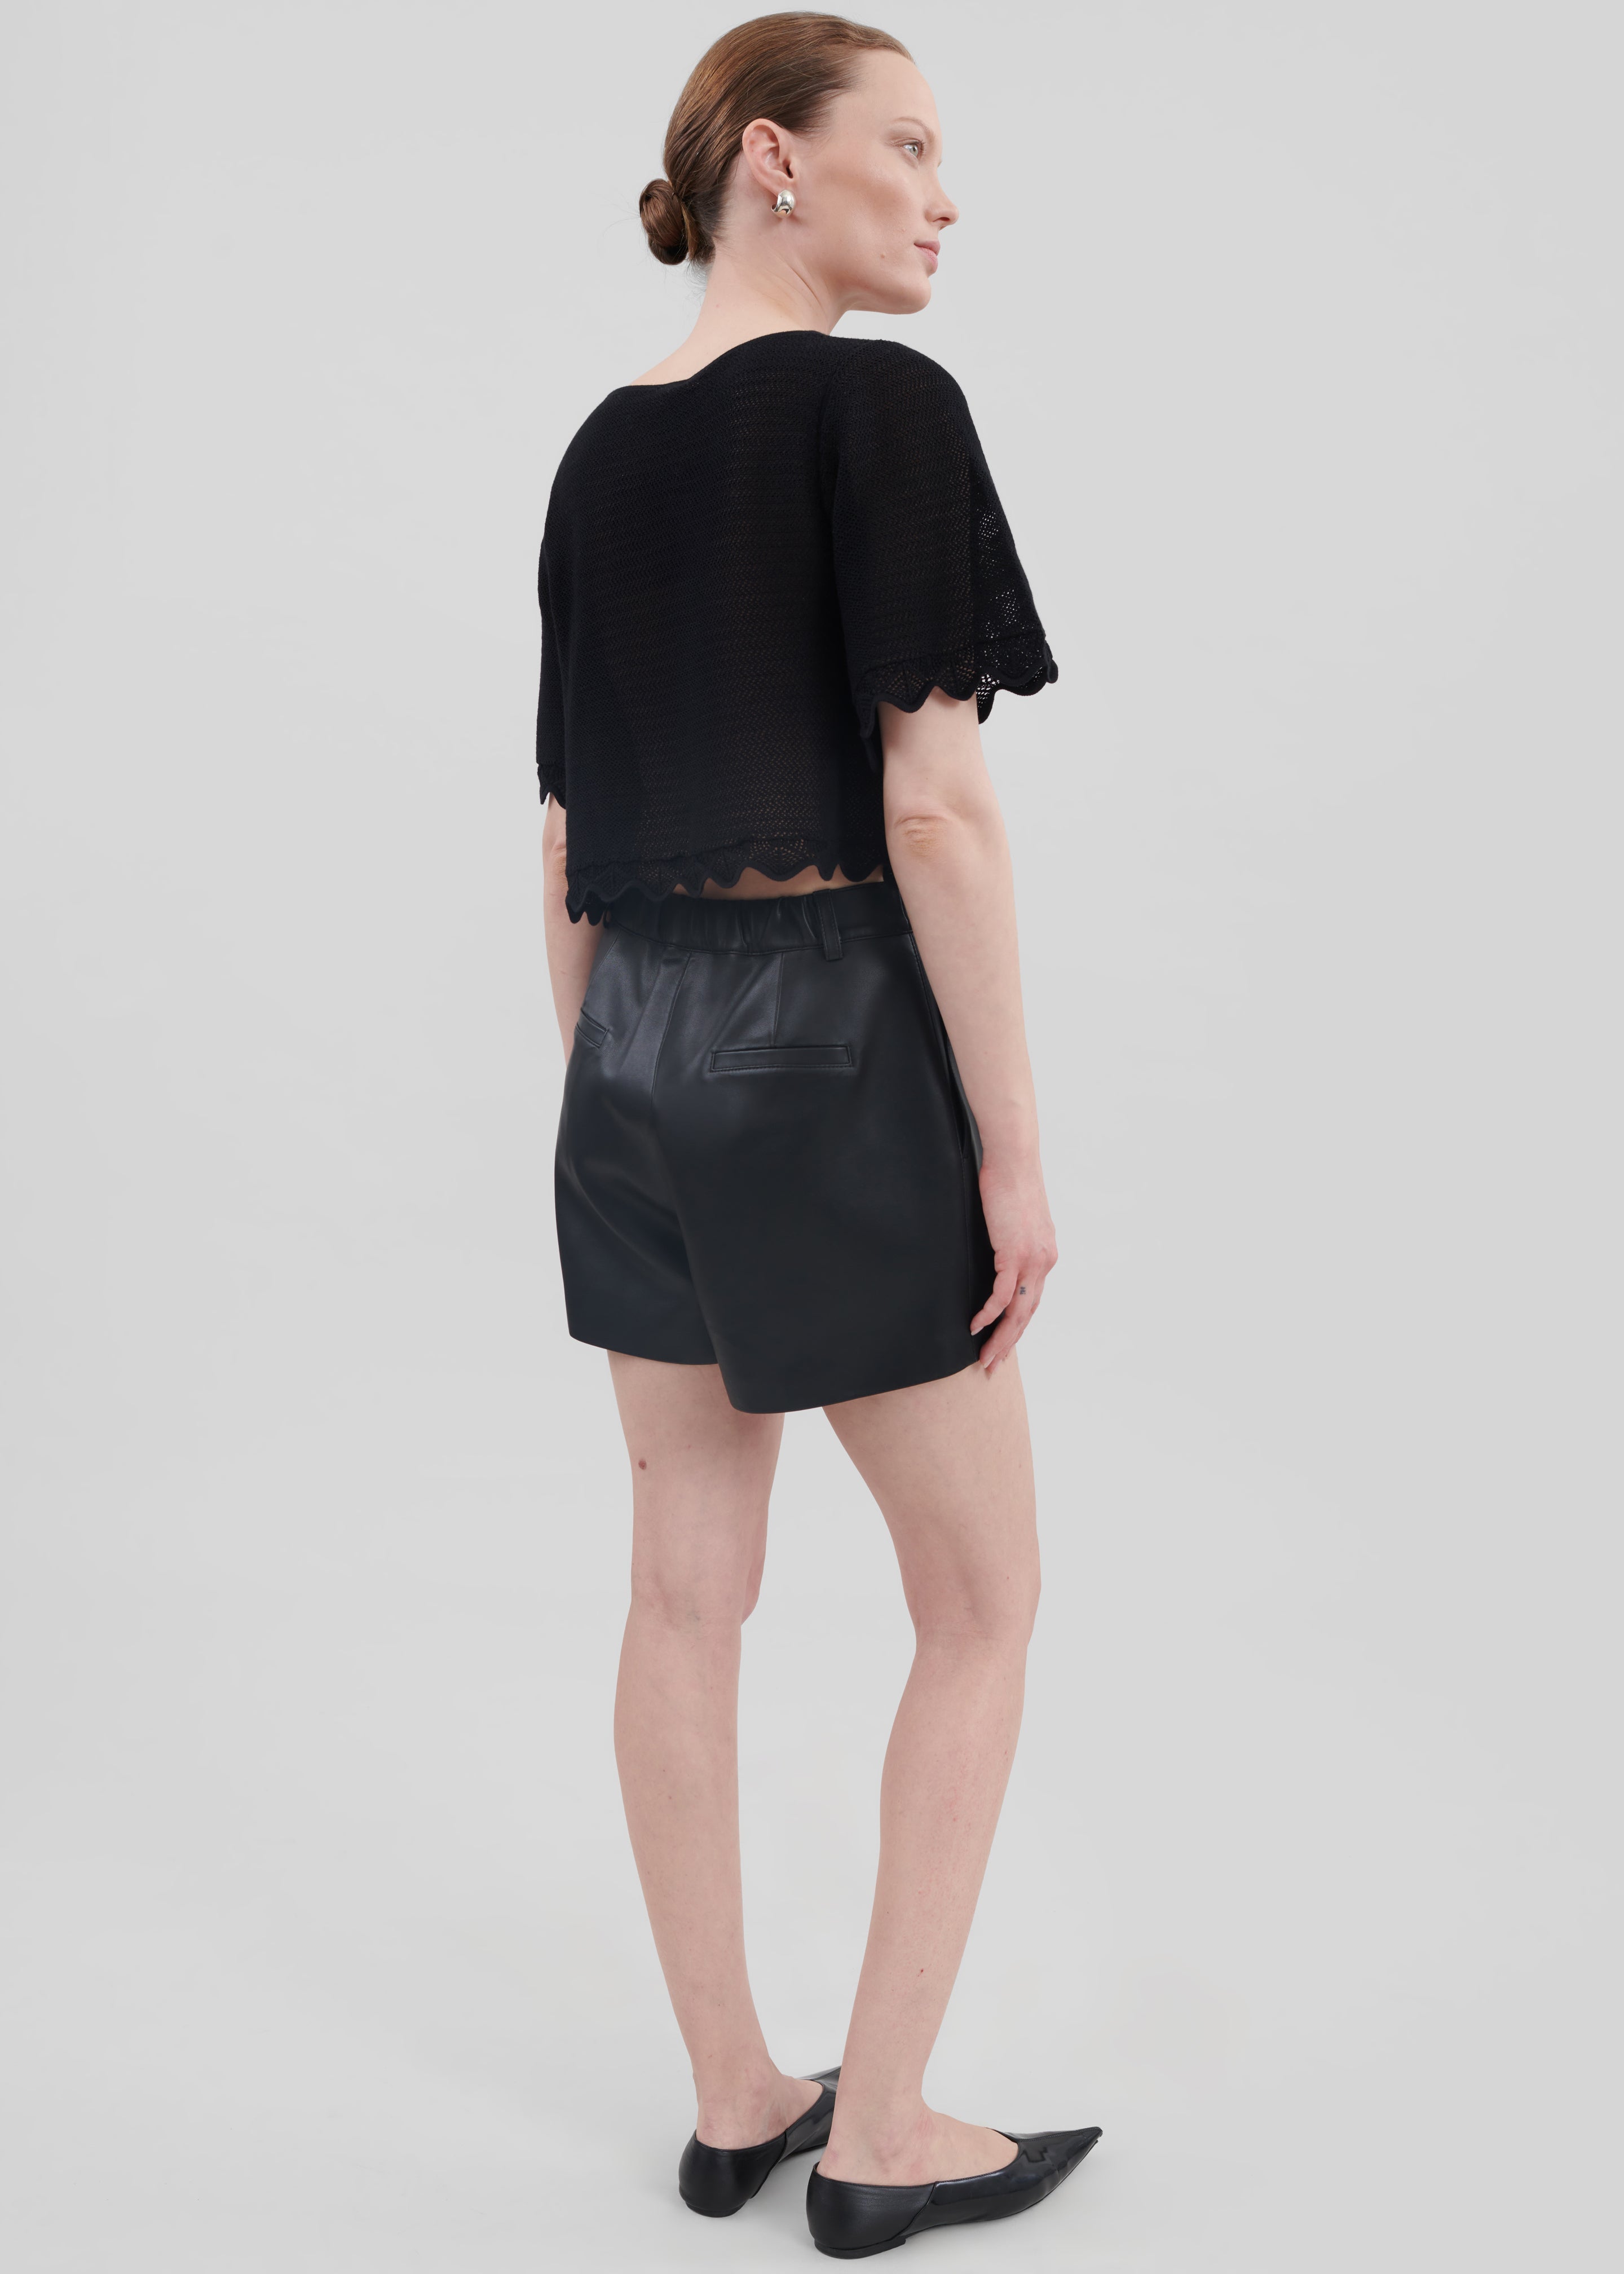 Cassie Faux Leather Mini Shorts - Black - 9